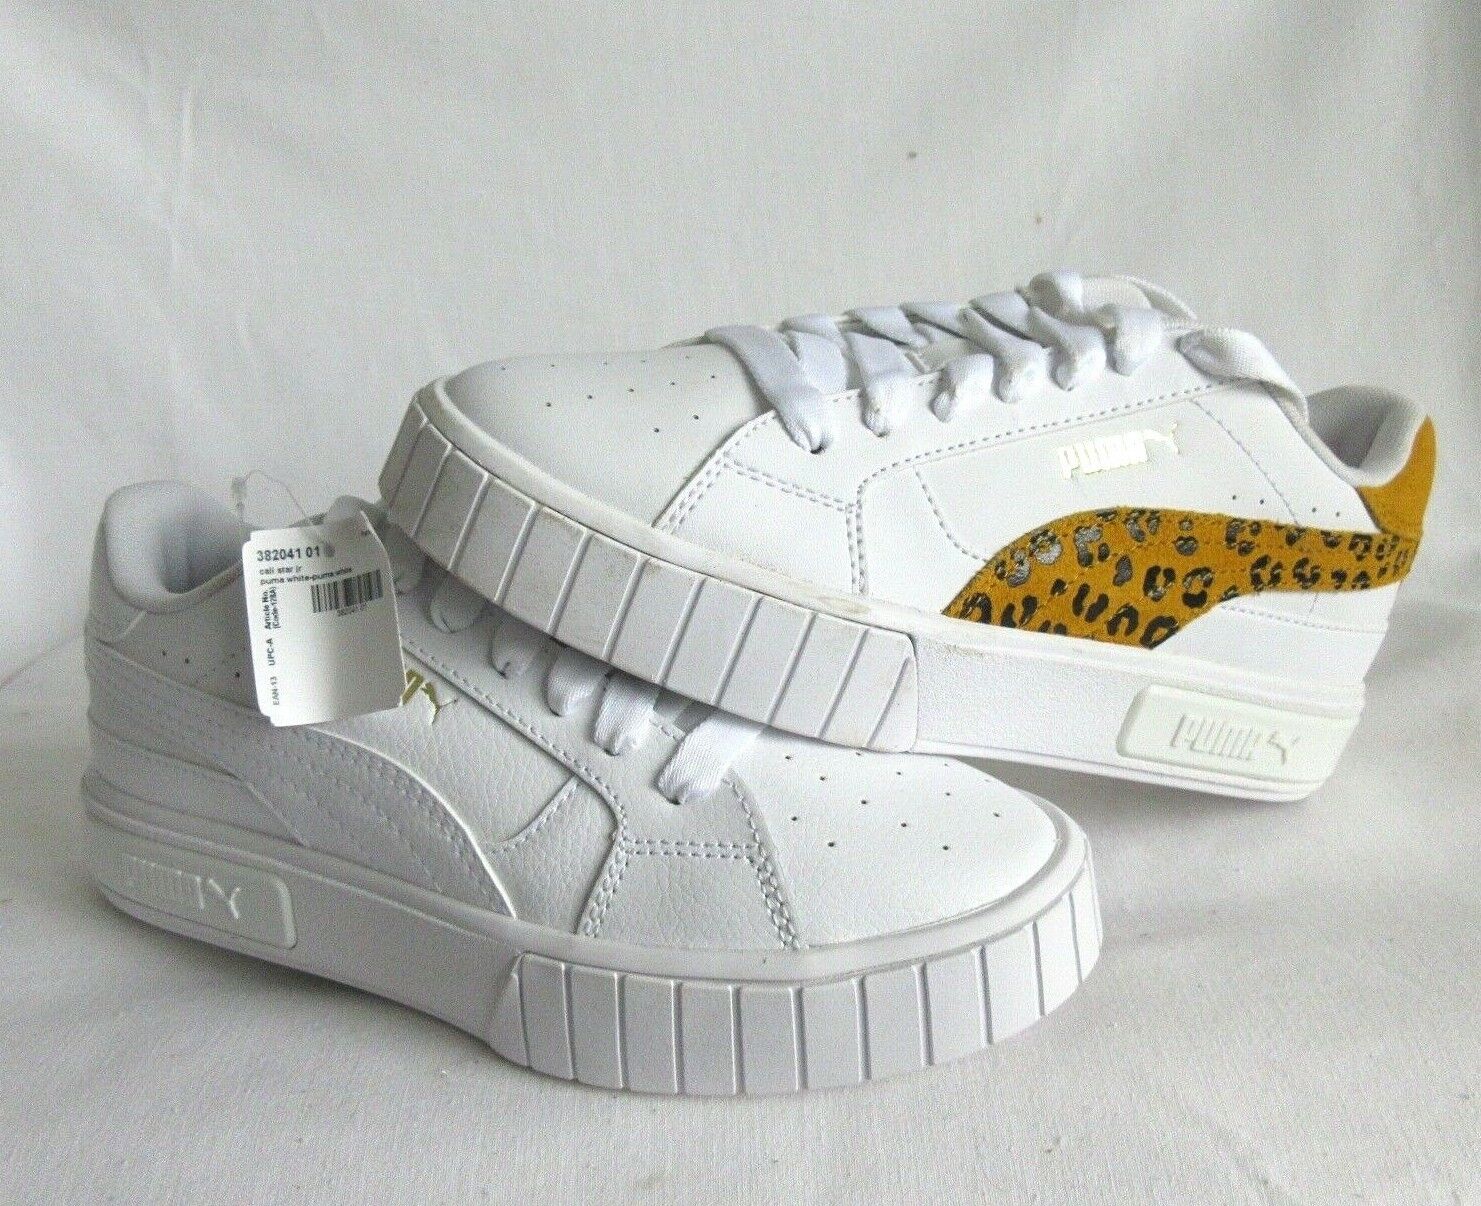 puma cali star leopard sneakers